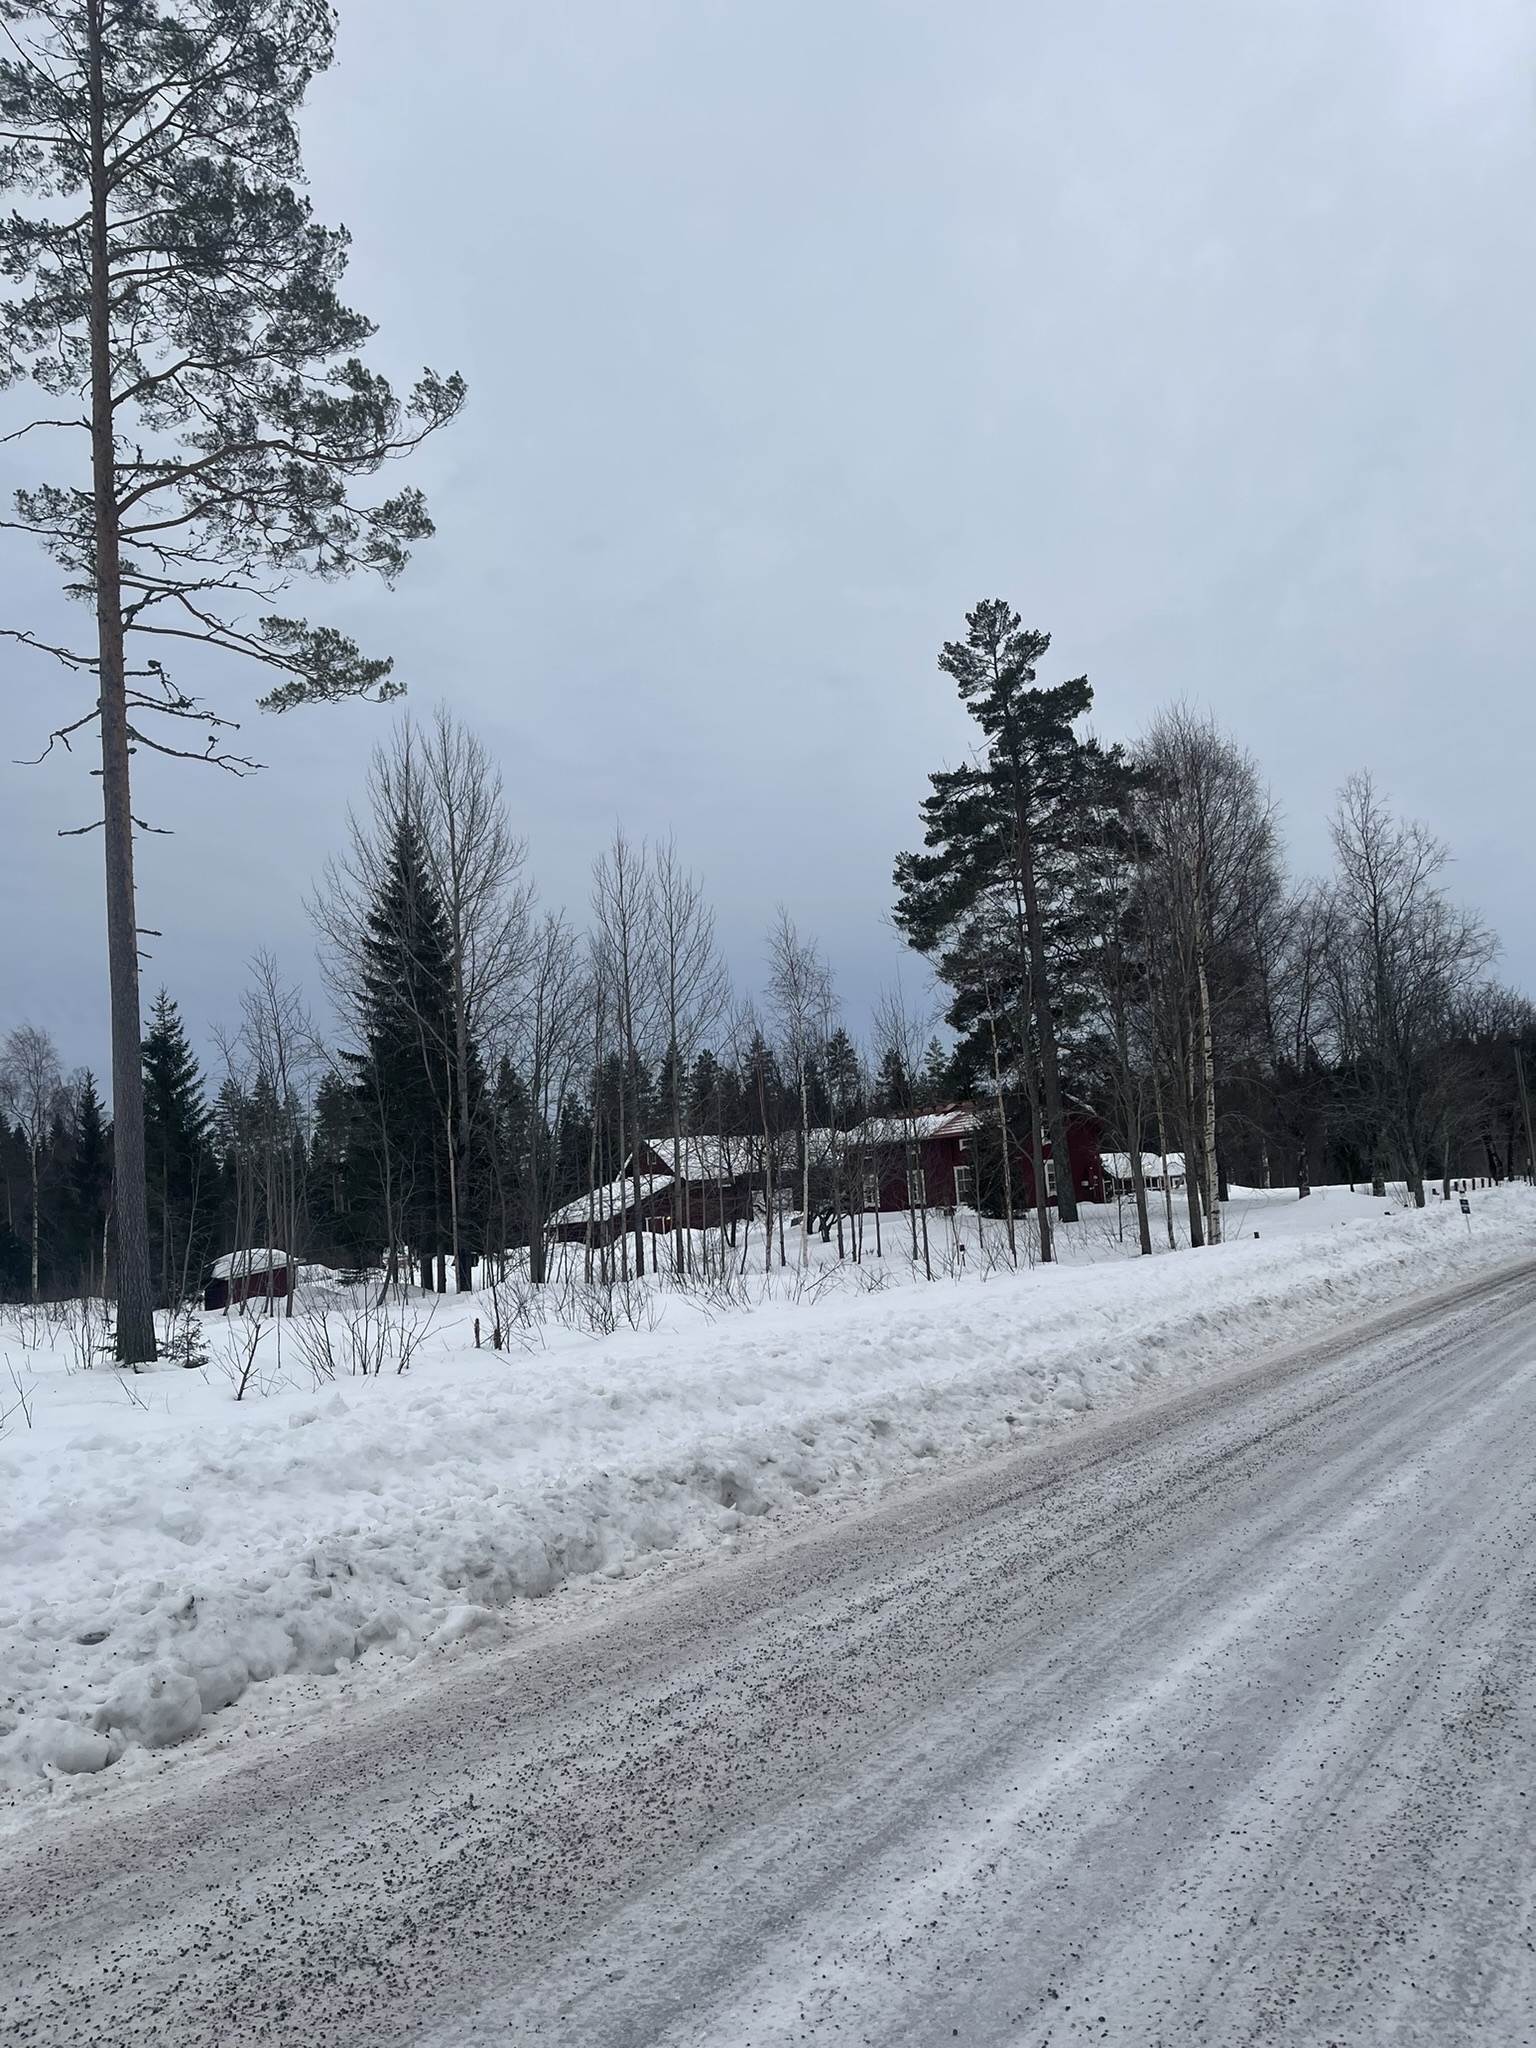 (Szwedzka północ była bardzo idylliczna. Dopóki nie zjechałeś z drogi i nie musiałeś wejść do głębokiego lasu.)